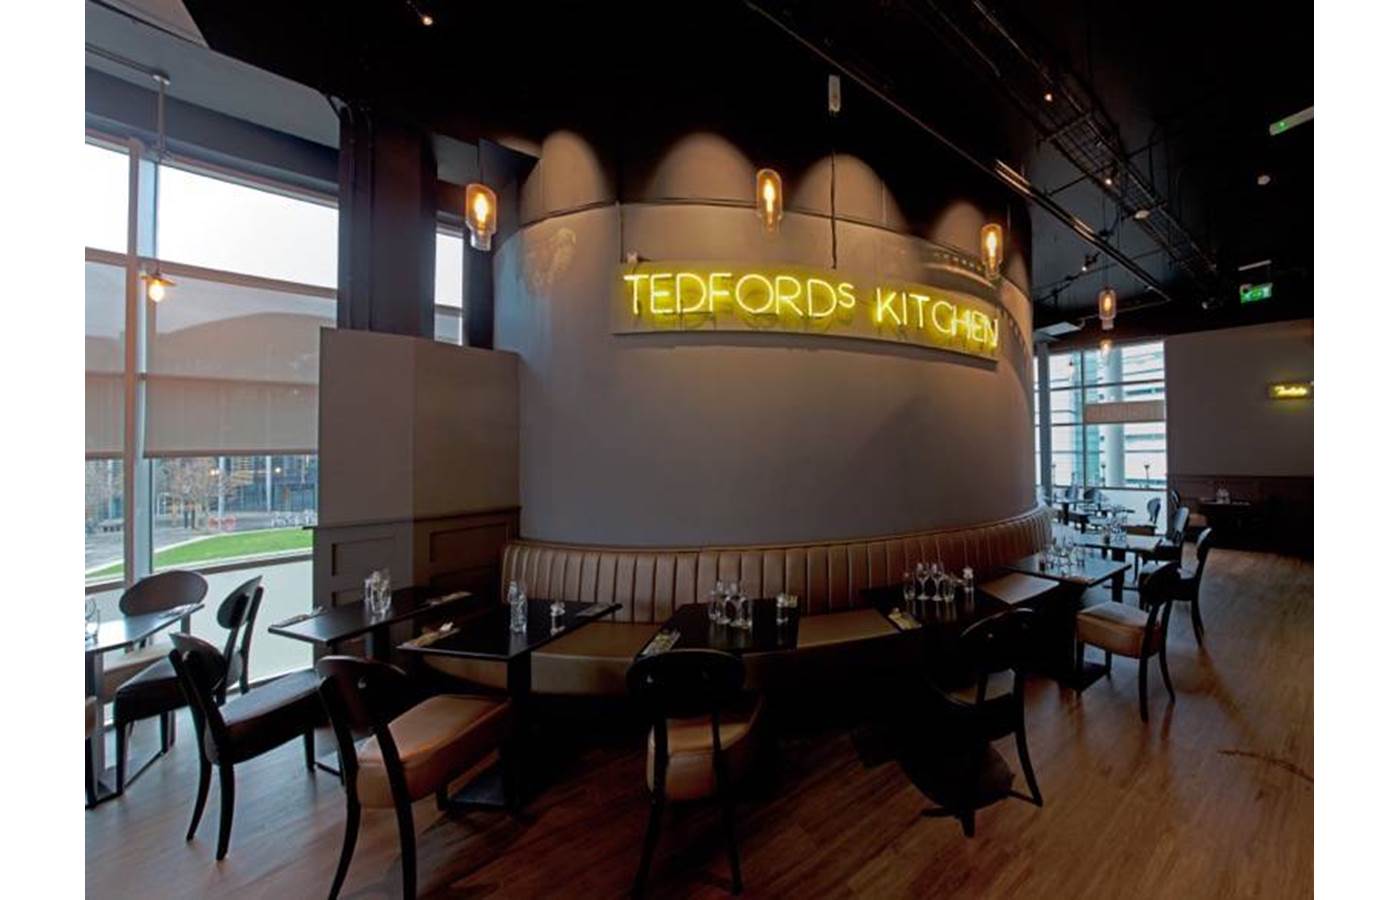 tedfords kitchen bar and restaurant